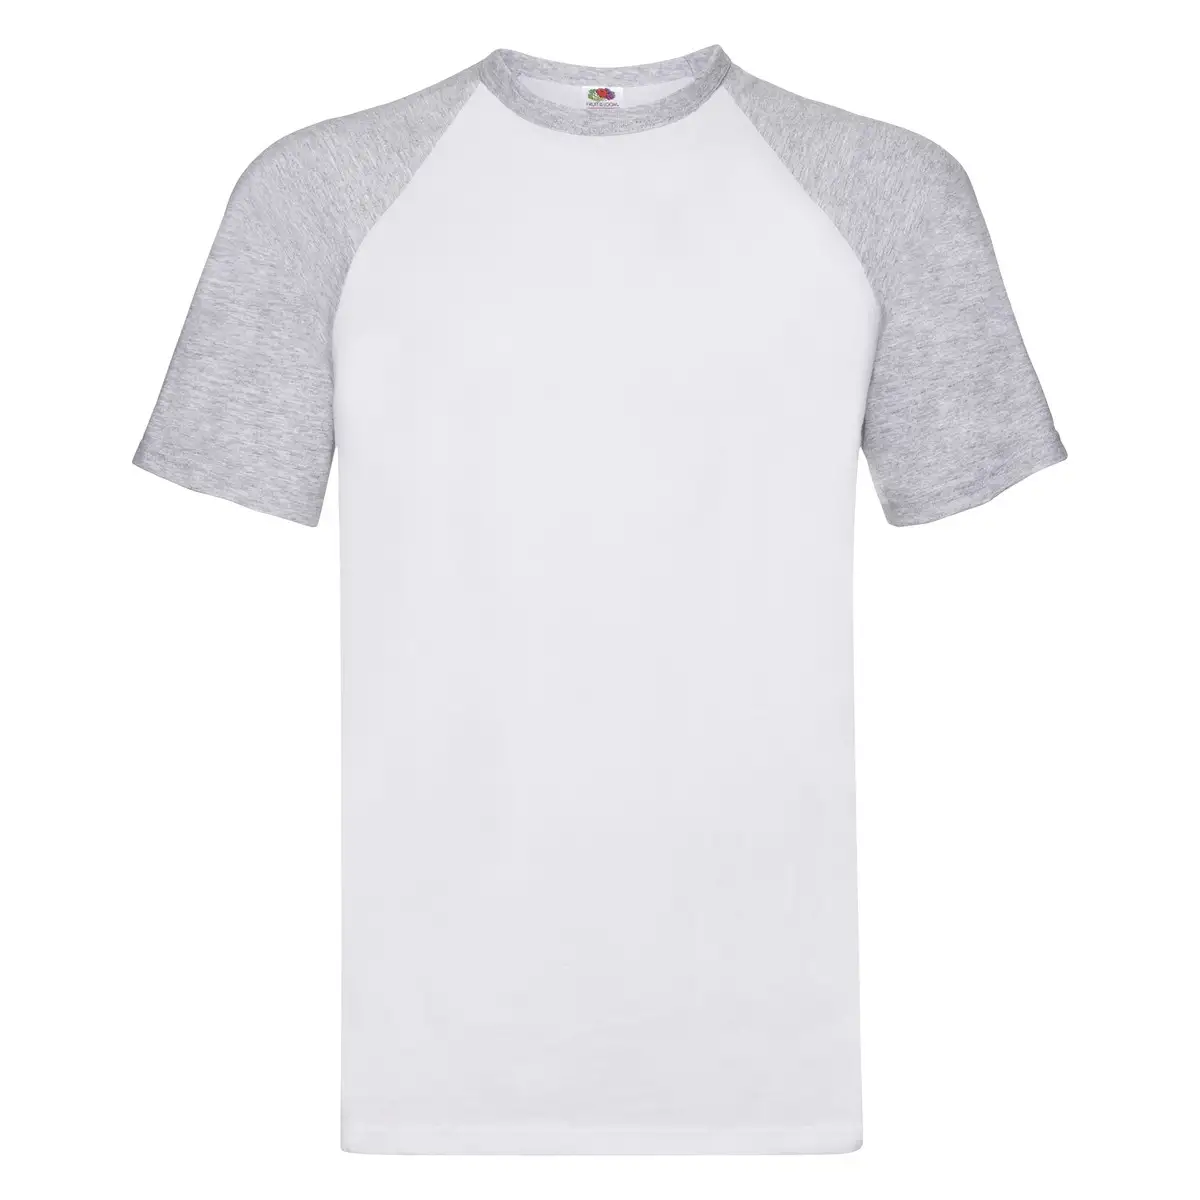 T-Shirt Uomo Cotone Manica Corta Personalizzata - Fruit of the Loom